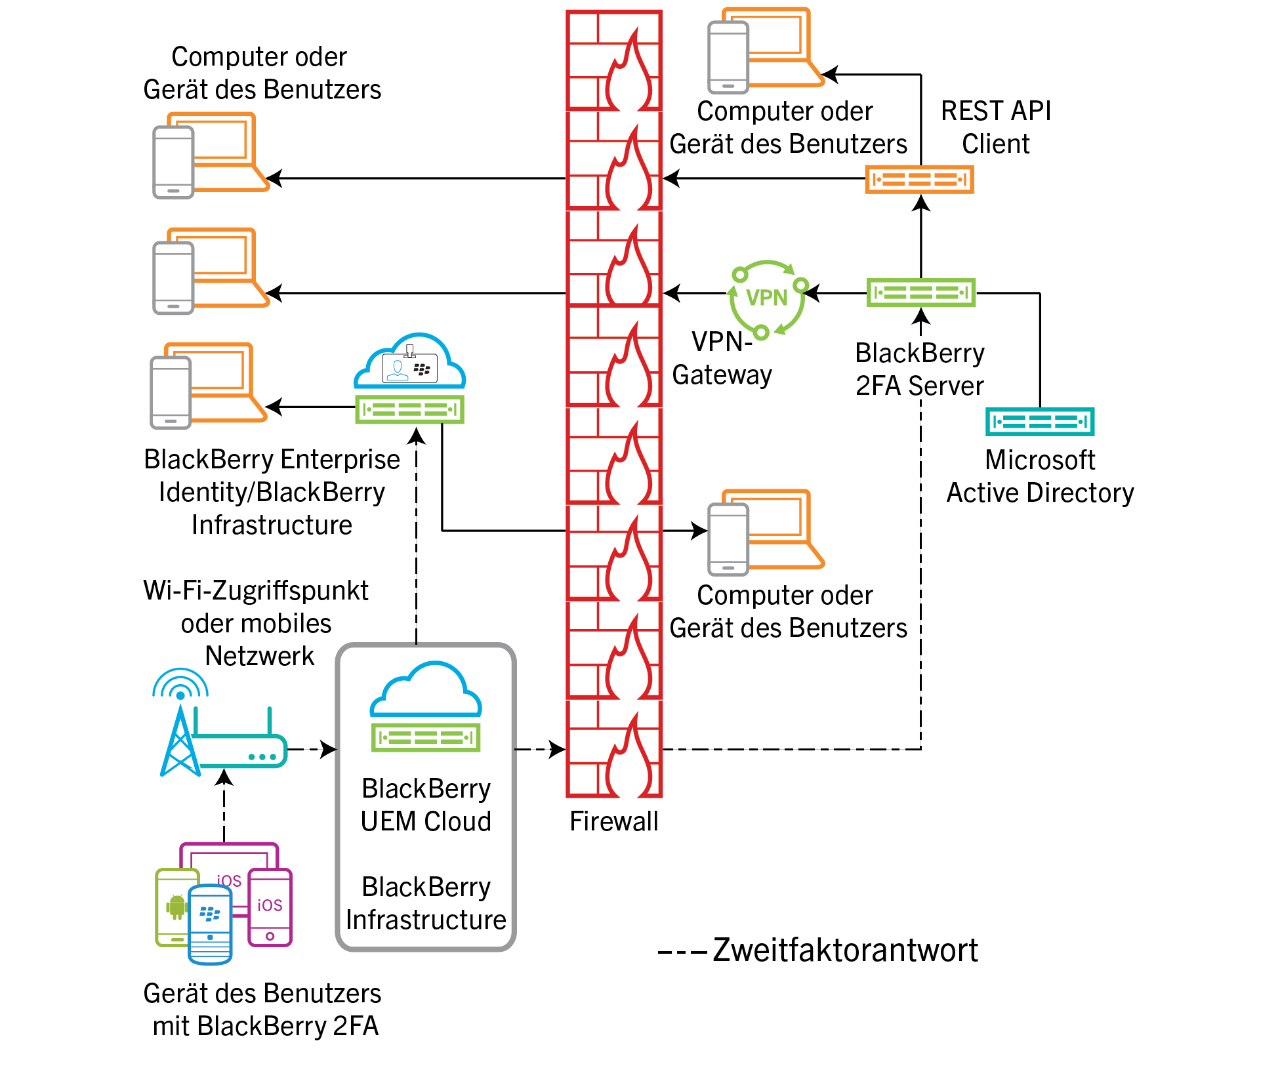 Dieses Diagramm zeigt den Datenfluss verschiedener Authentifizierungsantworten über BlackBerry UEM Cloud an.